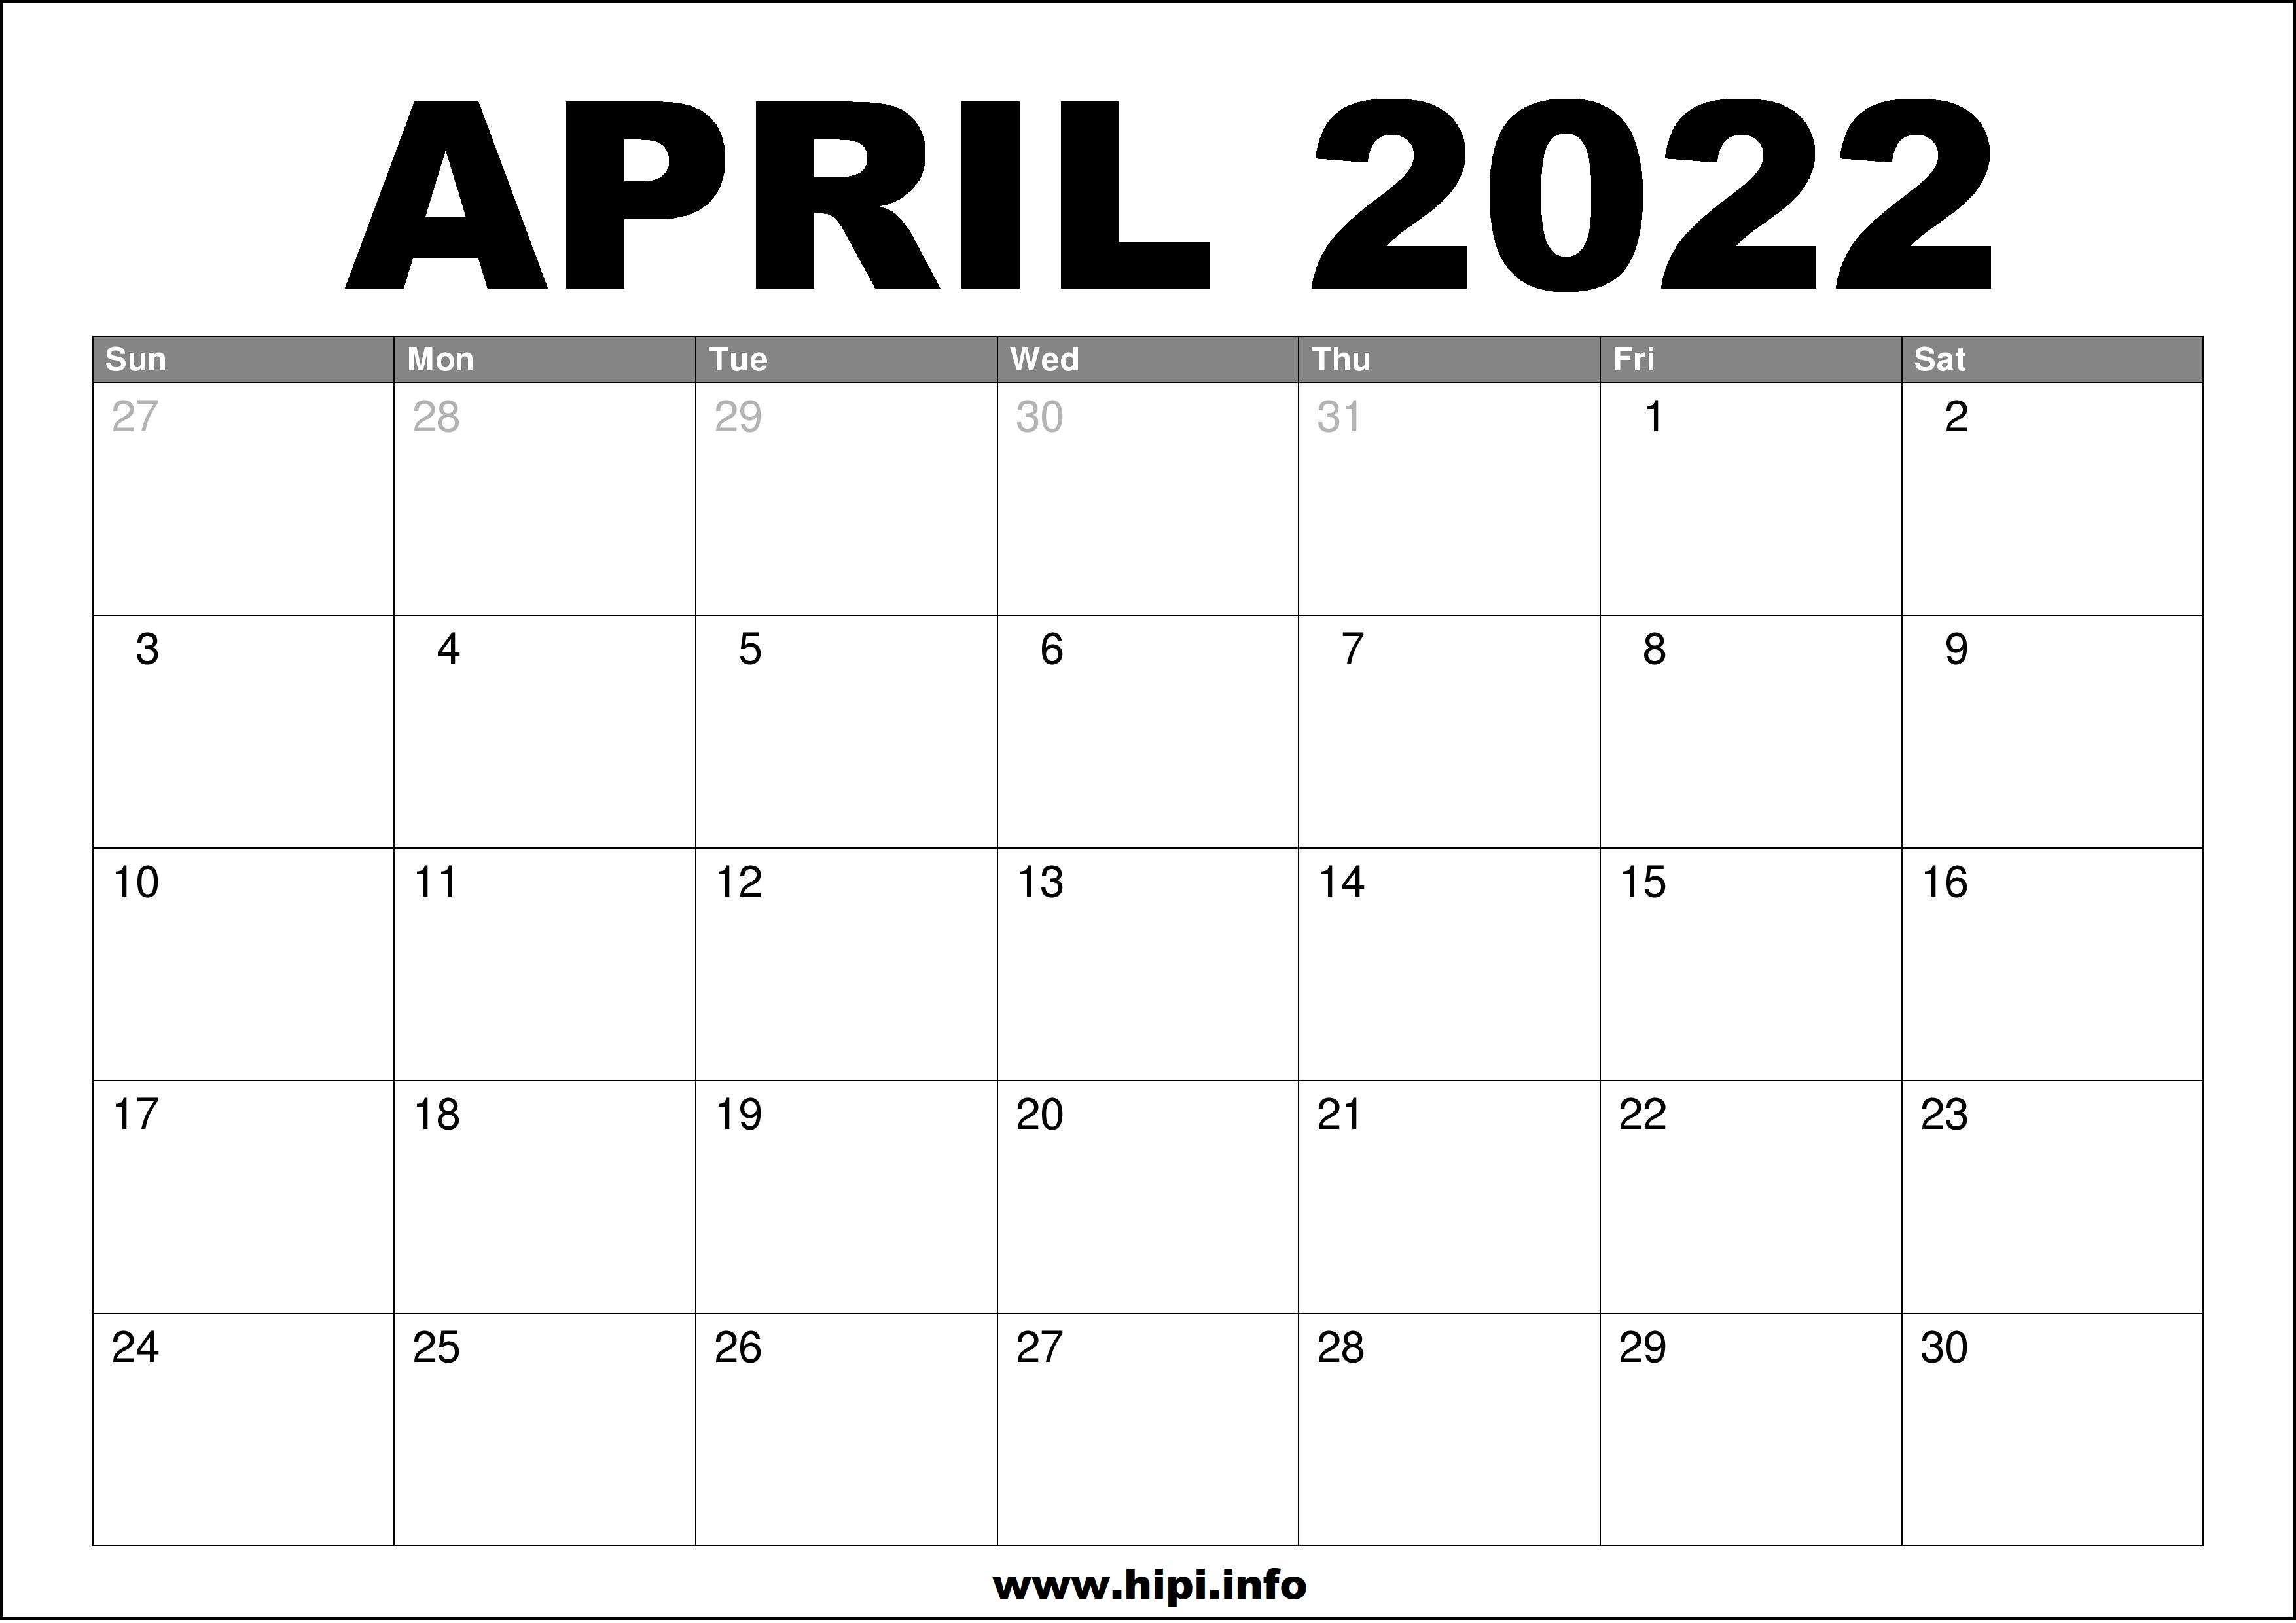 Monthly Calendar April 2022 April 2022 Calendar Printable Free - Hipi.info | Calendars Printable Free